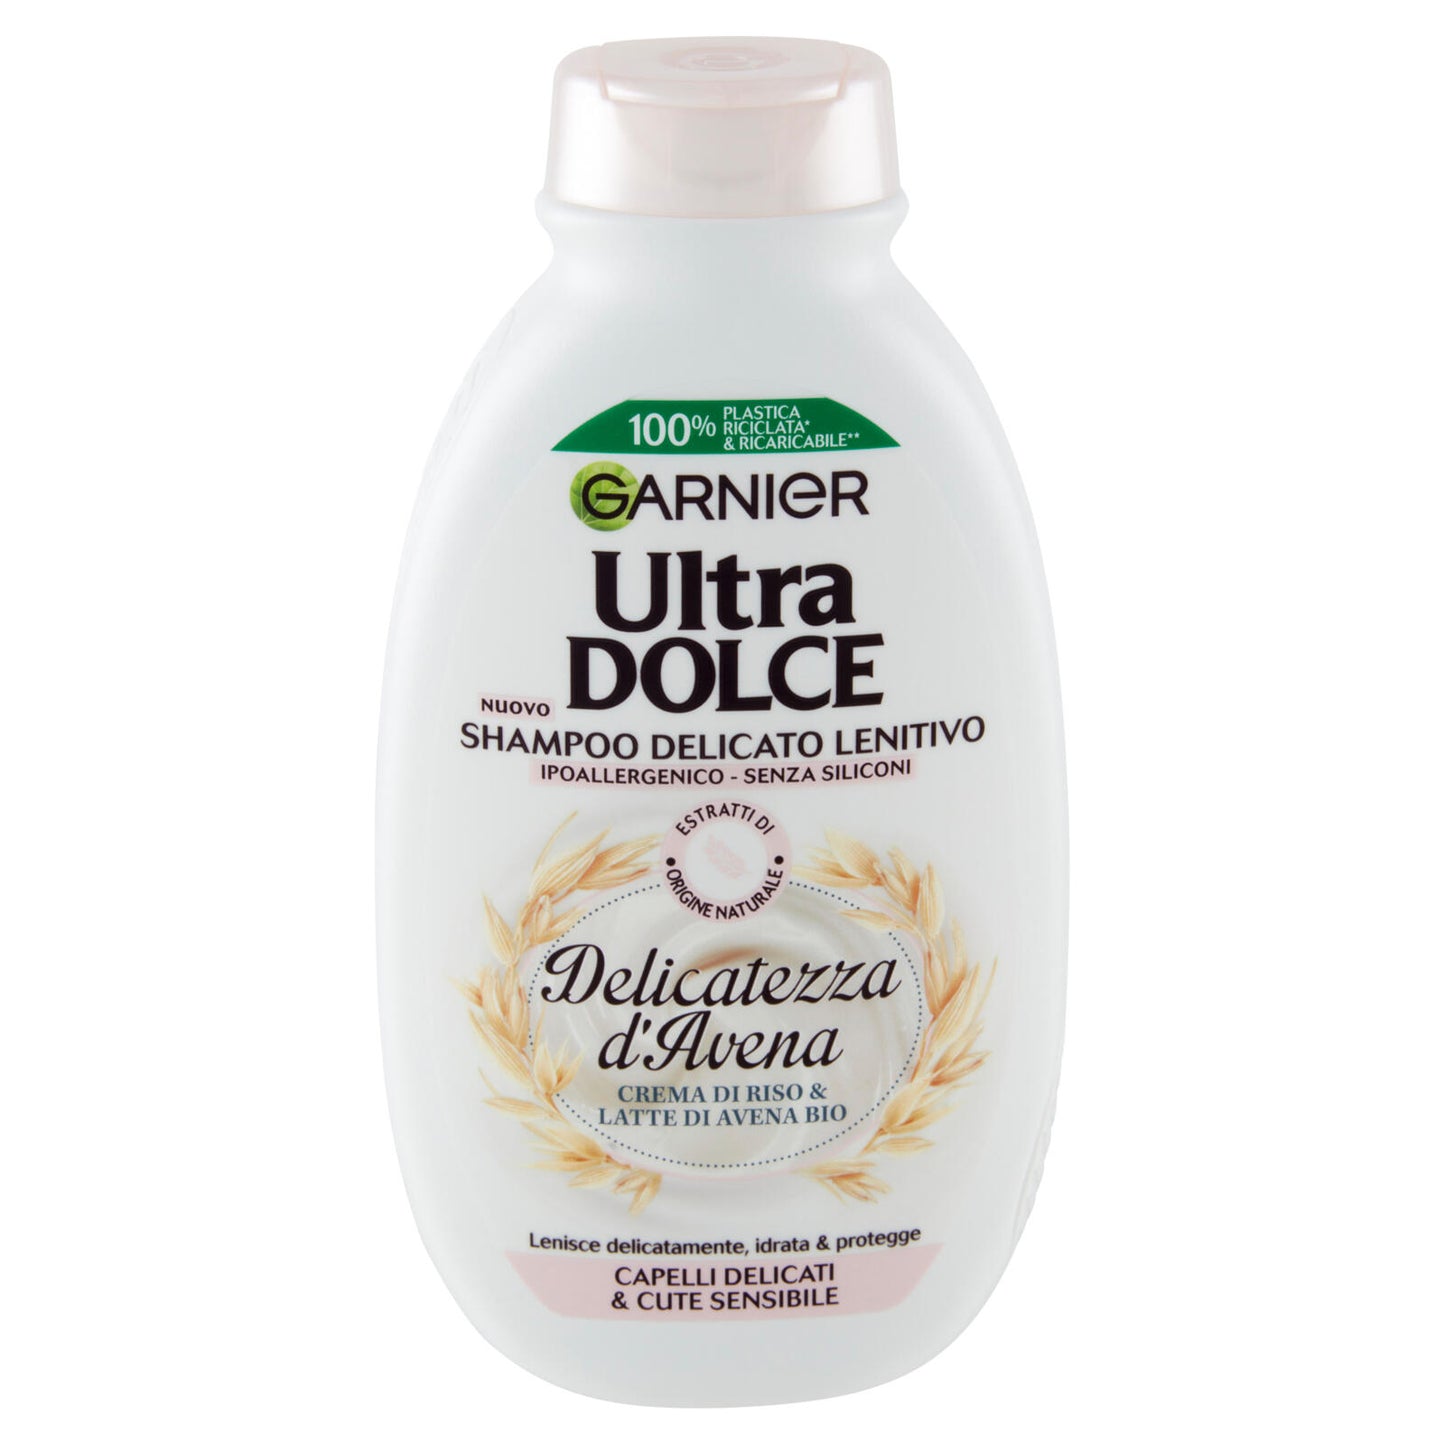 Garnier Ultra Dolce Shampoo Delicatezza D'Avena per capelli delicati- con crema di riso, 250 ml